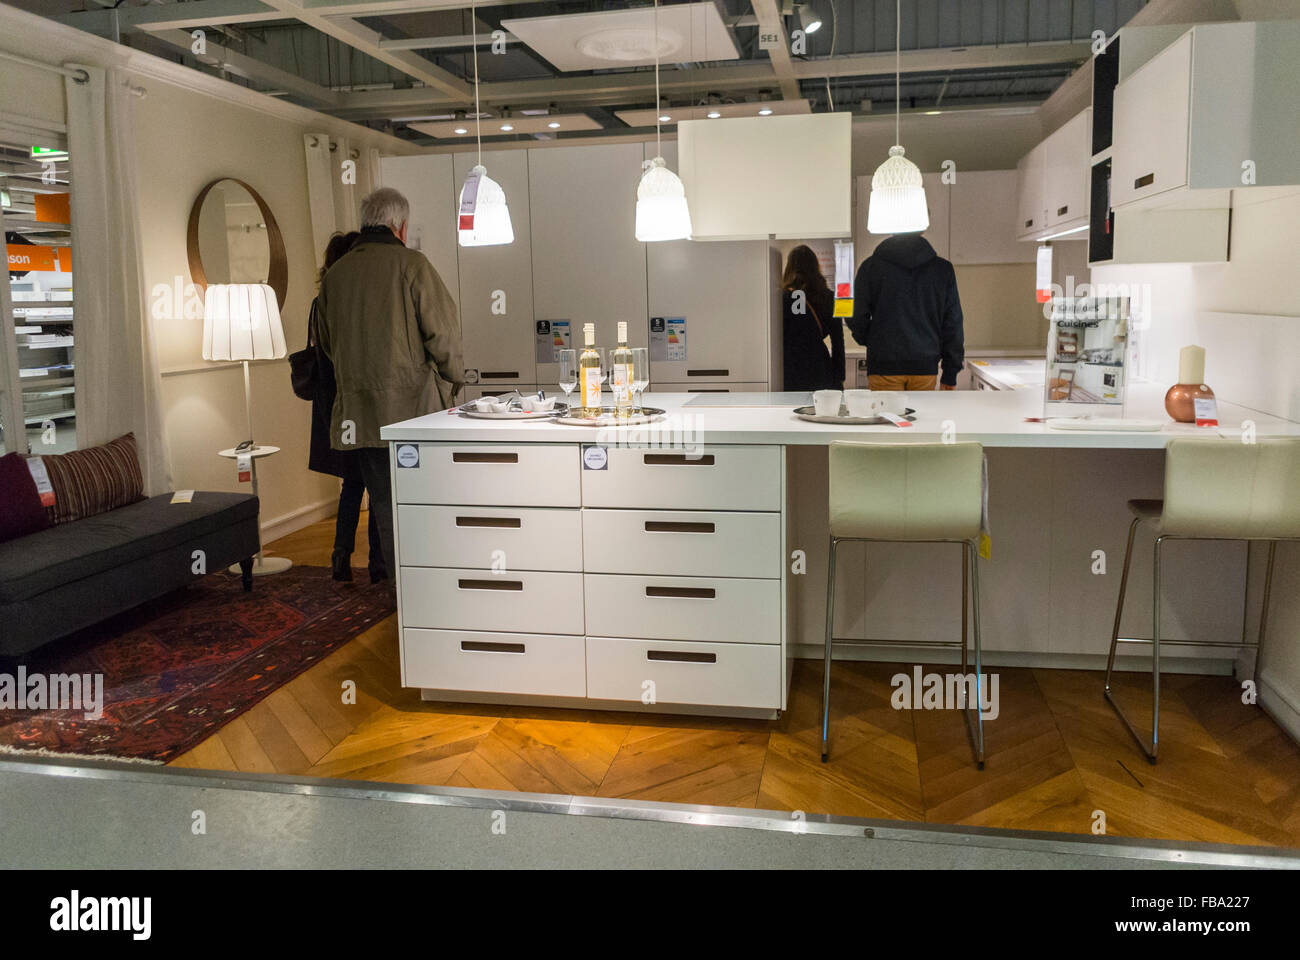 Paris, Frankreich, Leute Einkaufen im Baumarkt Haushaltswaren Store, IKEA,  moderne Küche einbaufertigen Möbel, Haushaltsgeräte, Home Interieur auf dem  Display Showroom Stockfotografie - Alamy